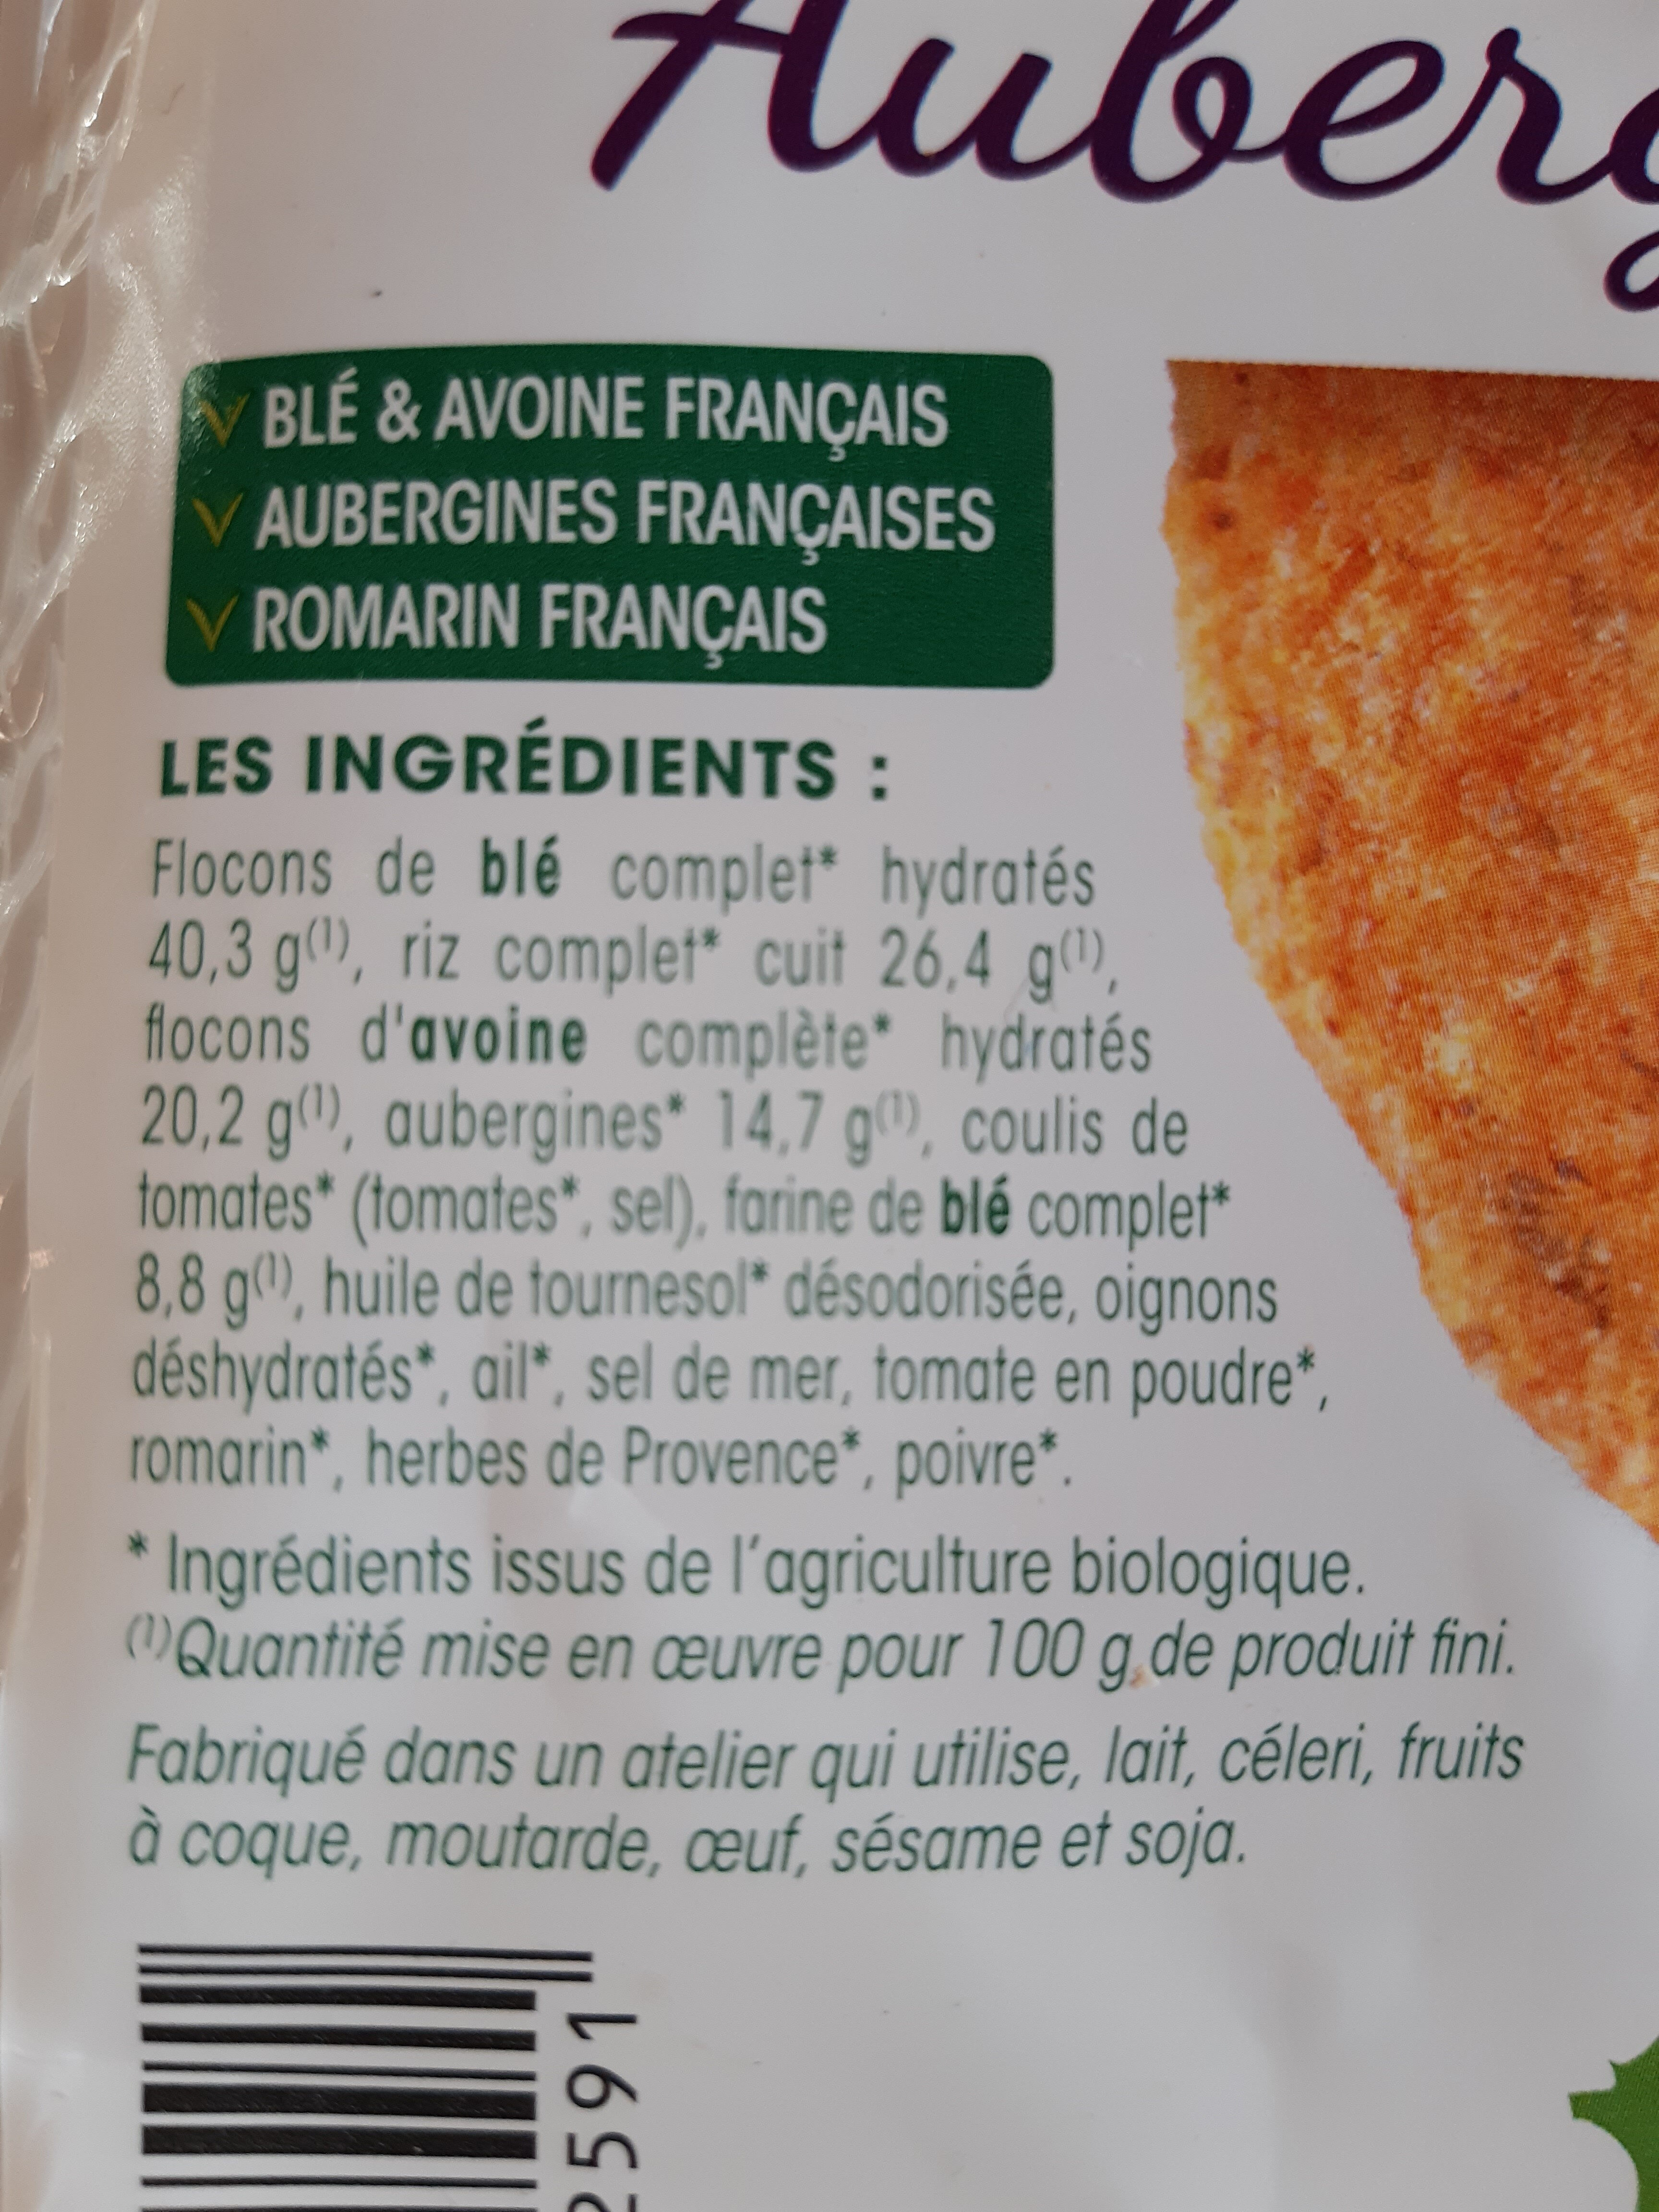 Galettes aubergine - romarin - Ingredients - fr